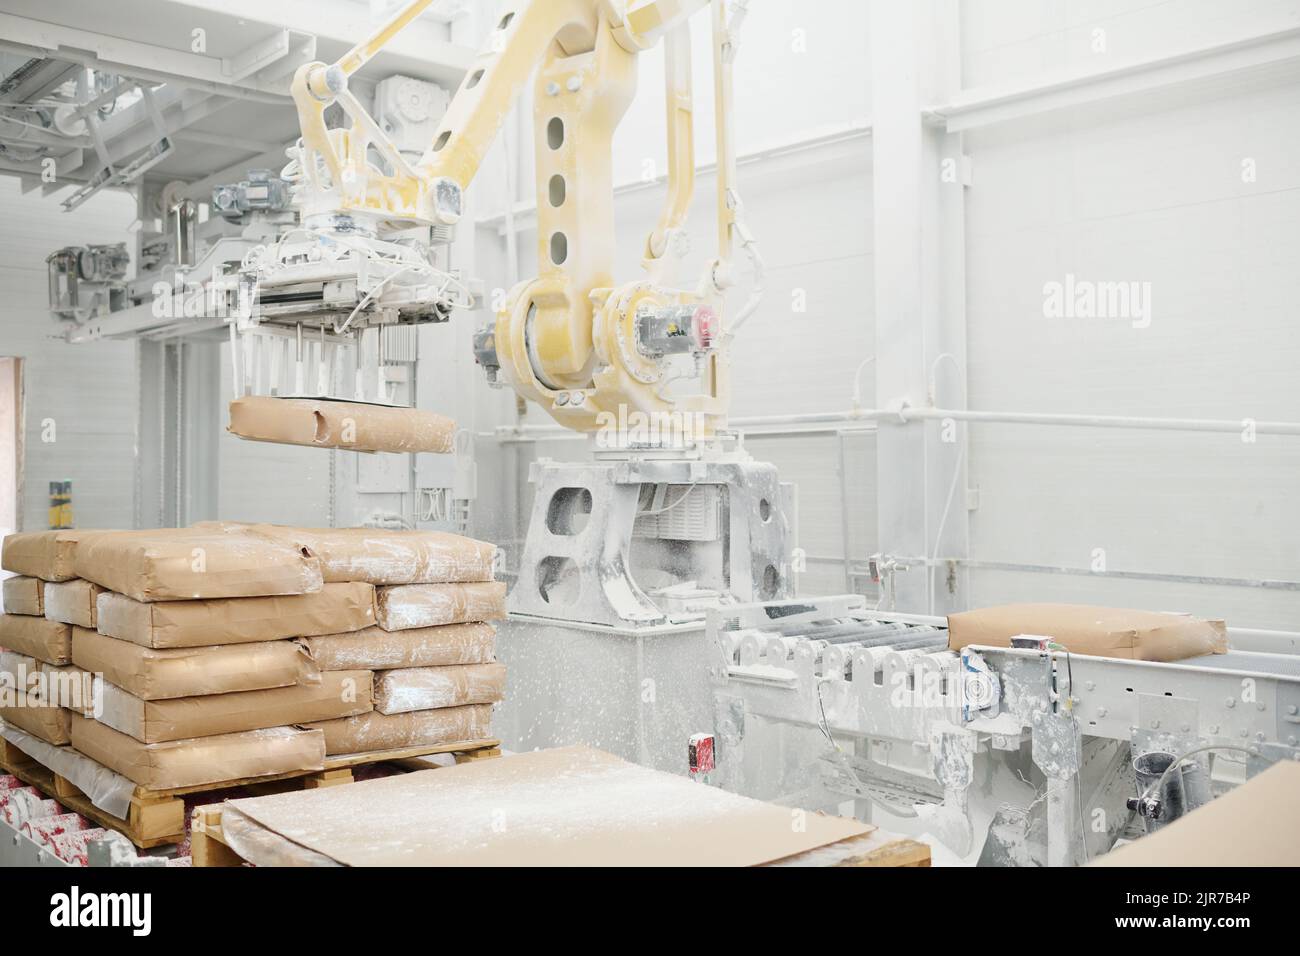 Riesige hydraulische industrielle Maschine, die schwere Pakete hebt und sie auf Produktionslinie in der Werkstatt der modernen Fabrik setzt Stockfoto